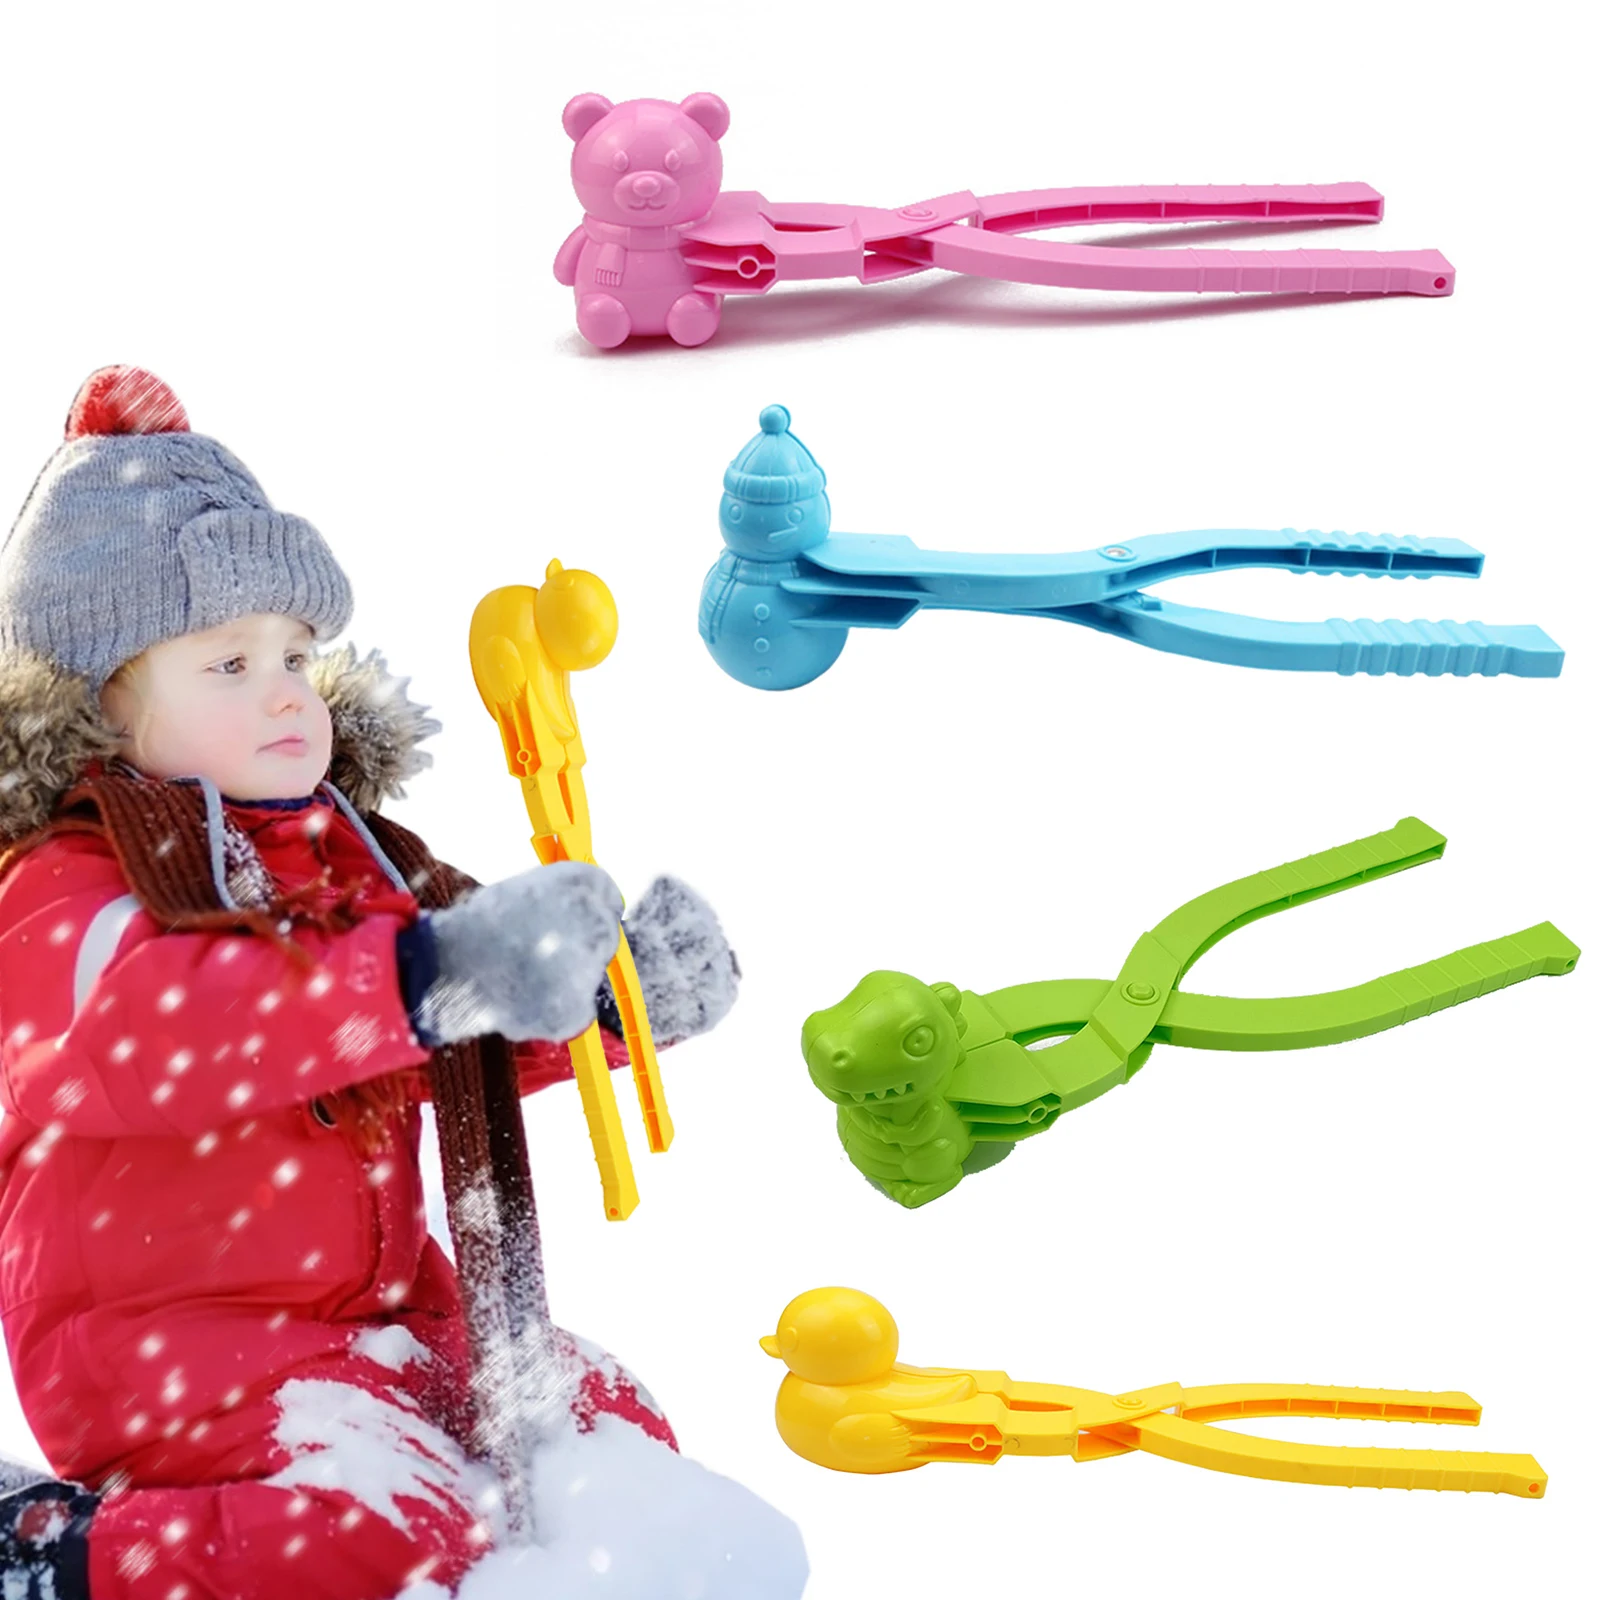 

4 шт. DIY снежные шарики, зажимы для моделей, Мультяшные шарики разной формы, гаджеты для изготовления снега/песка, захватывающая игрушка, детс...